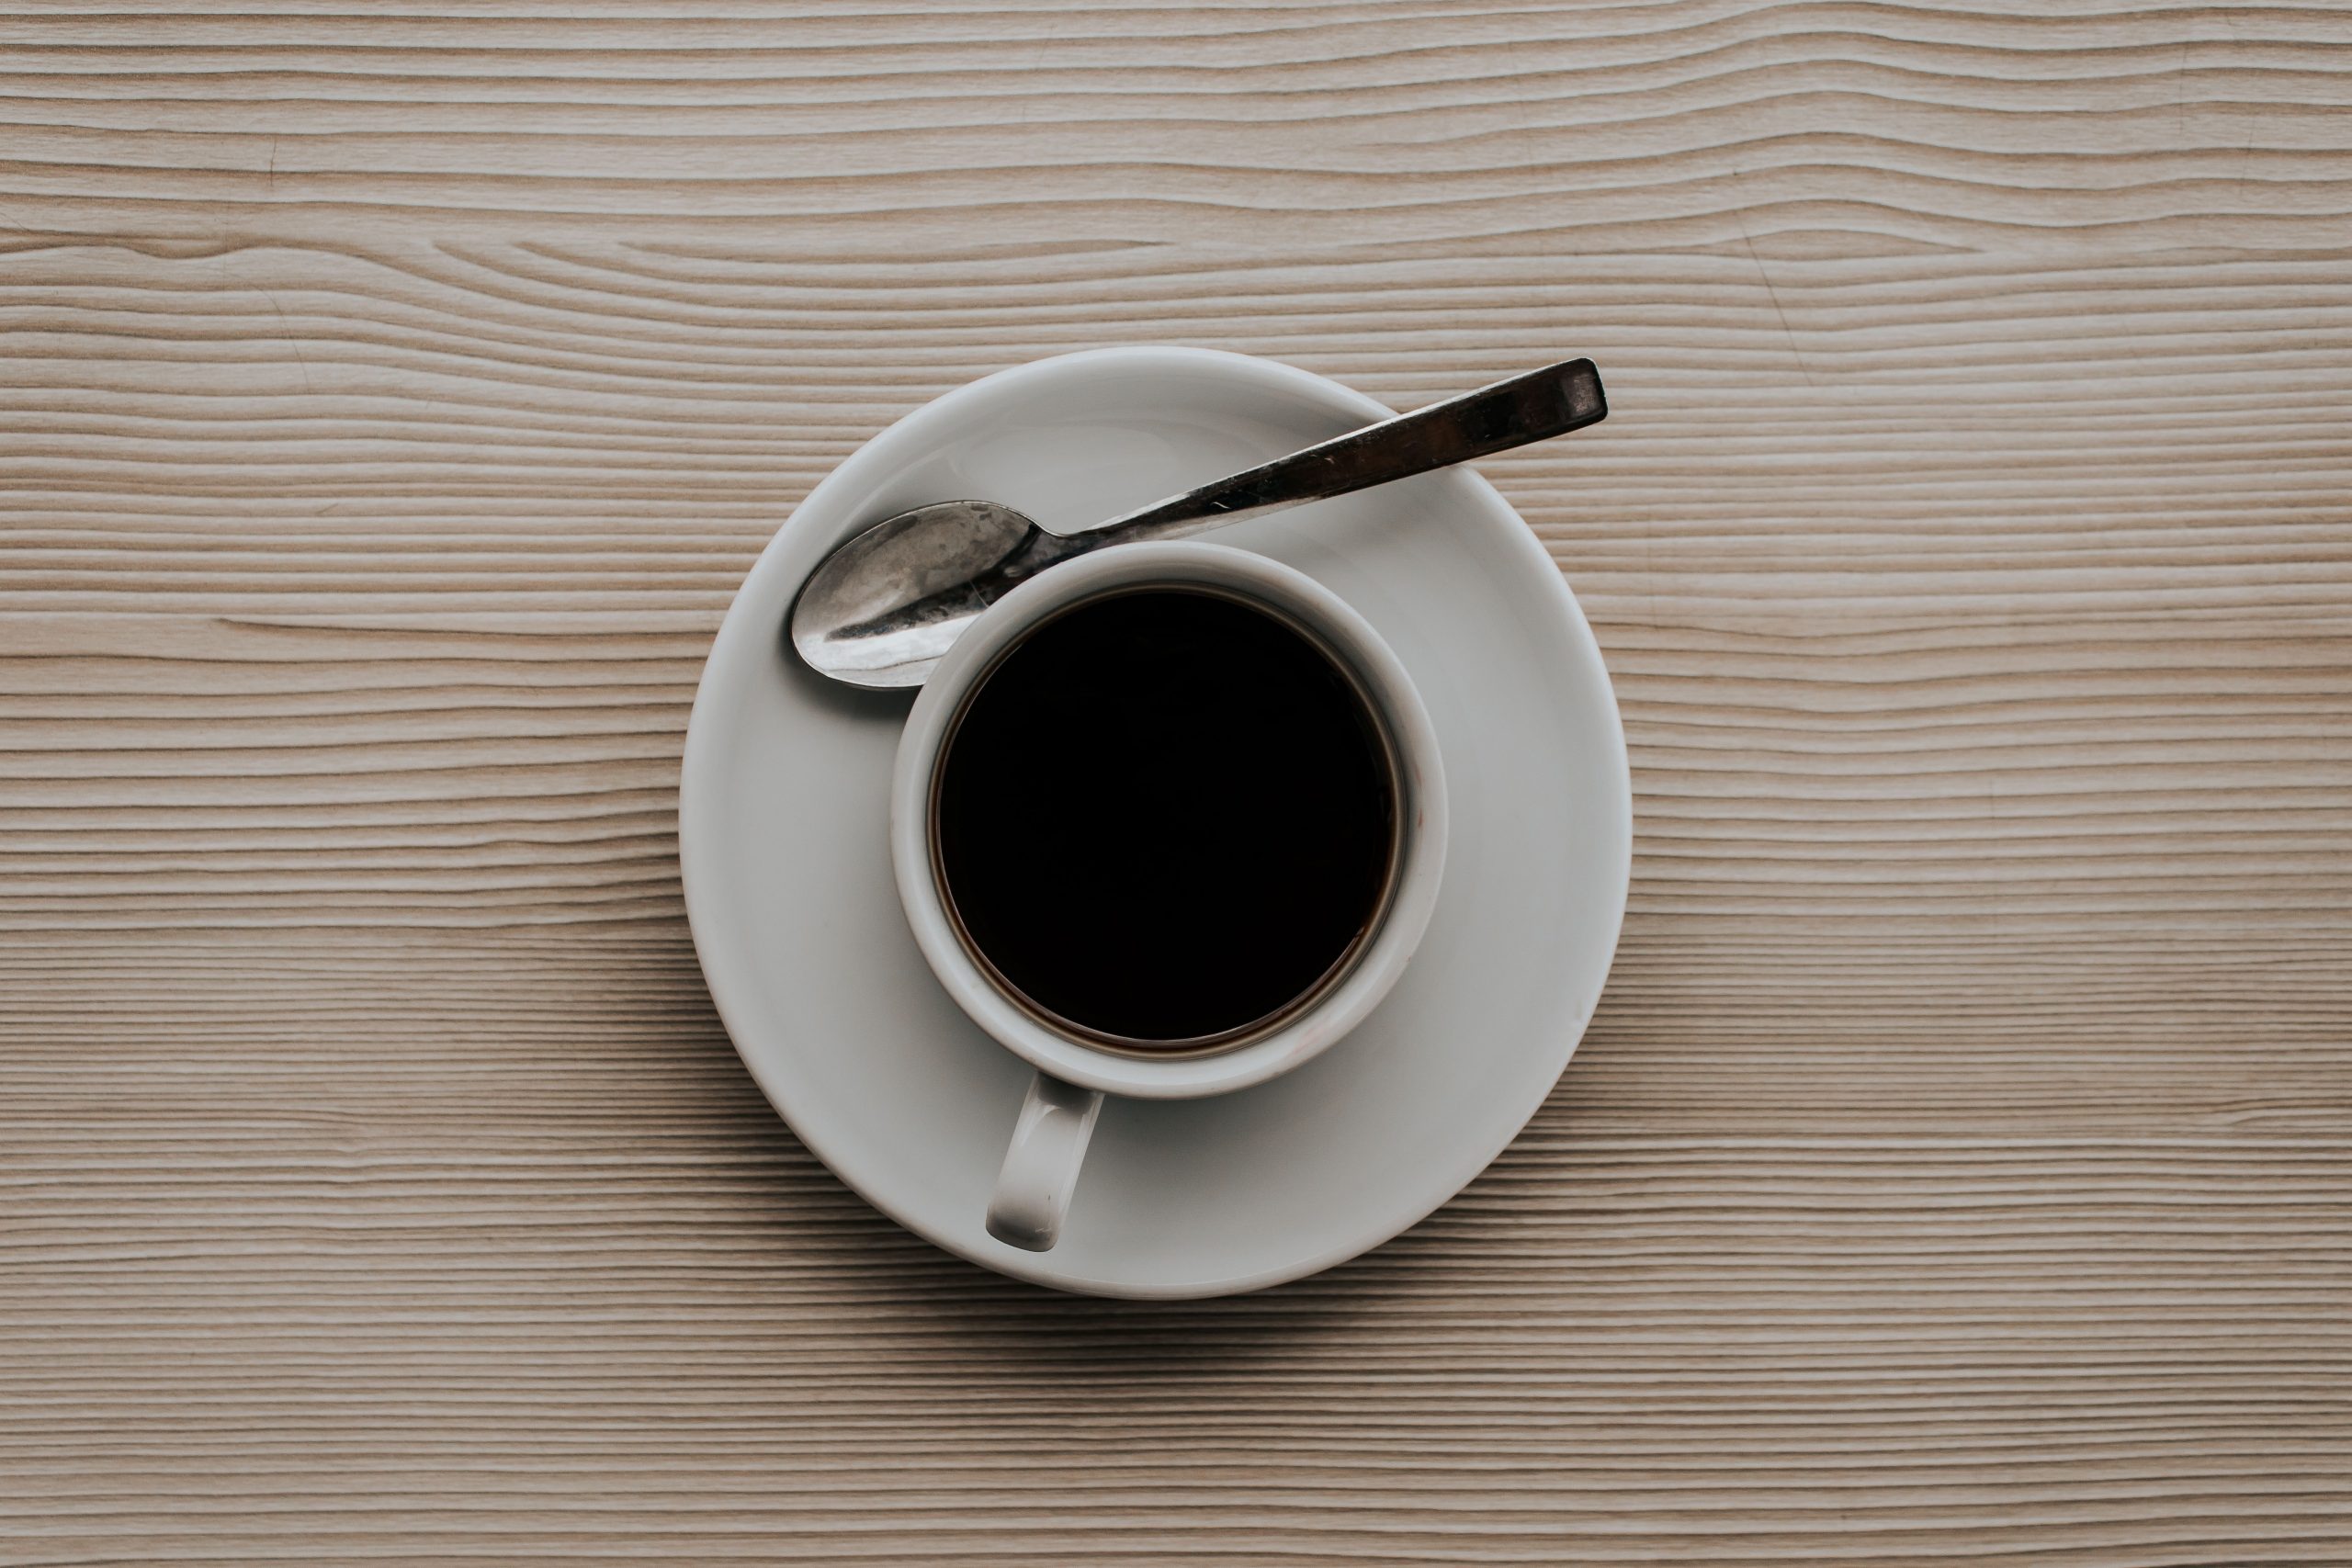 Mug of black coffee on table